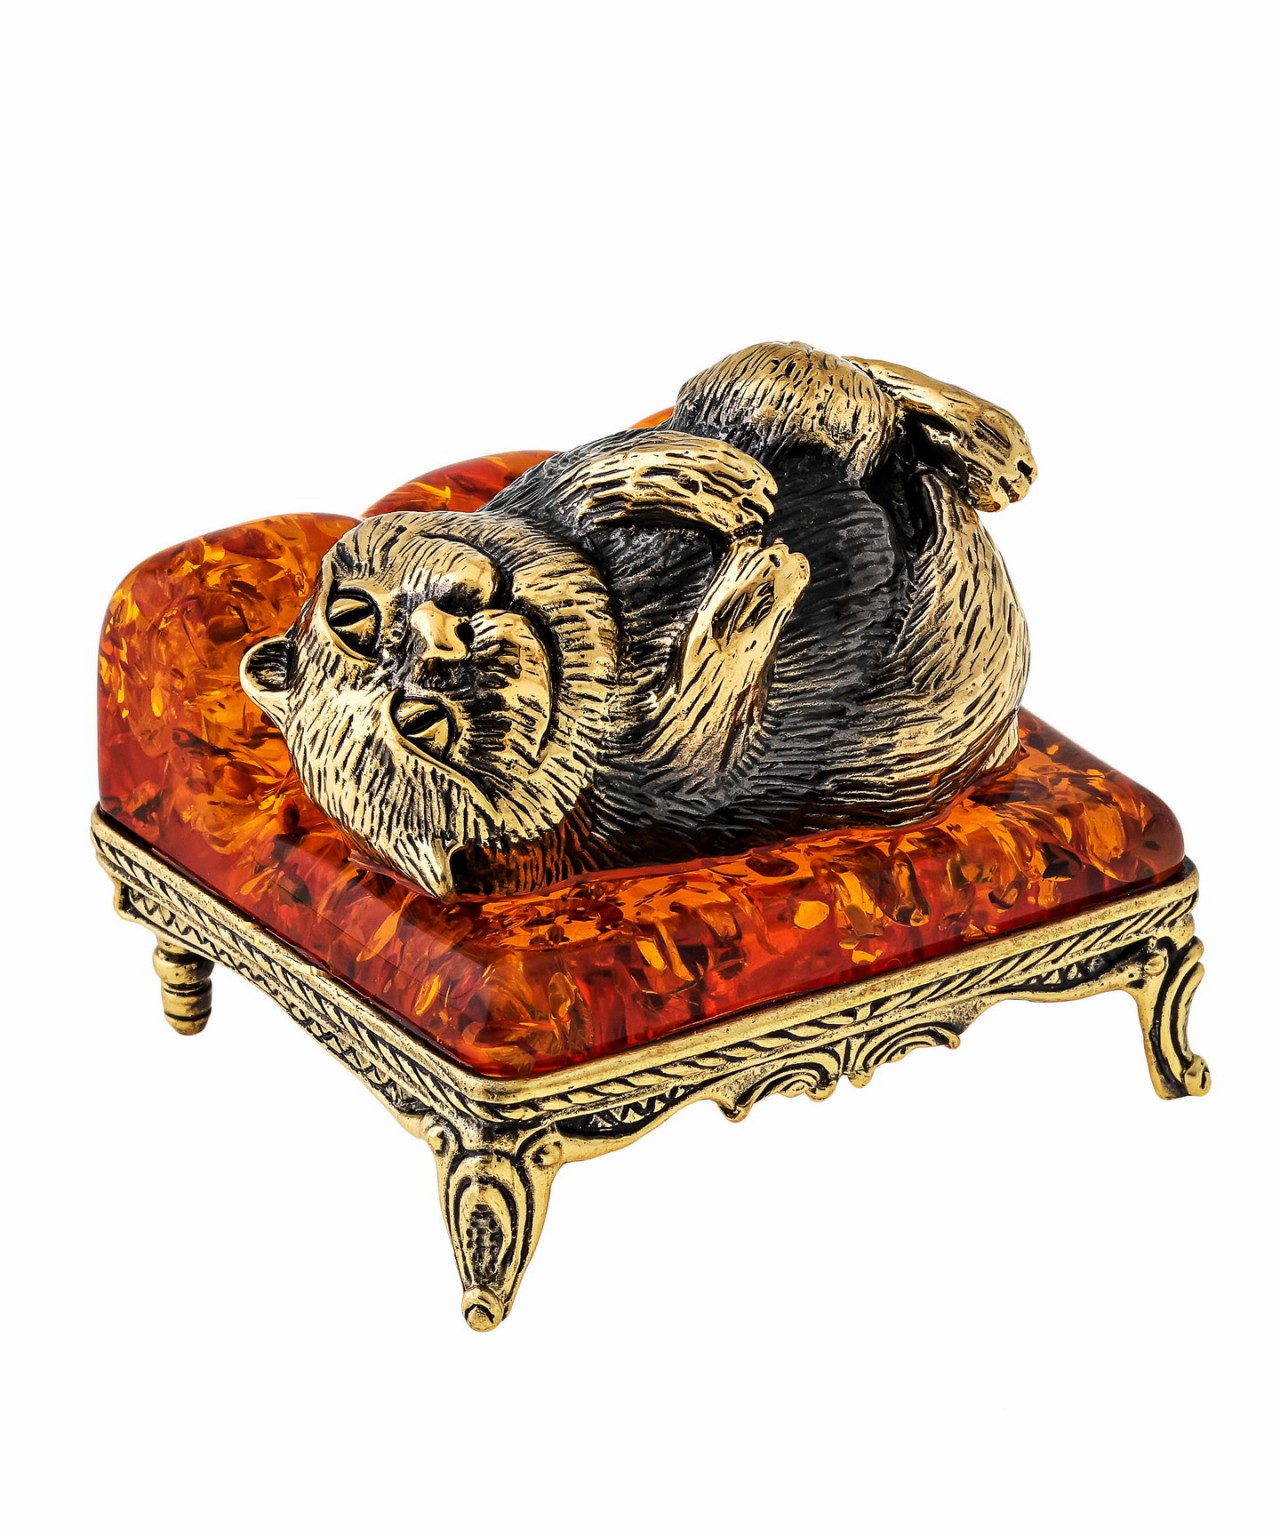 Кот на диване лежит 1460